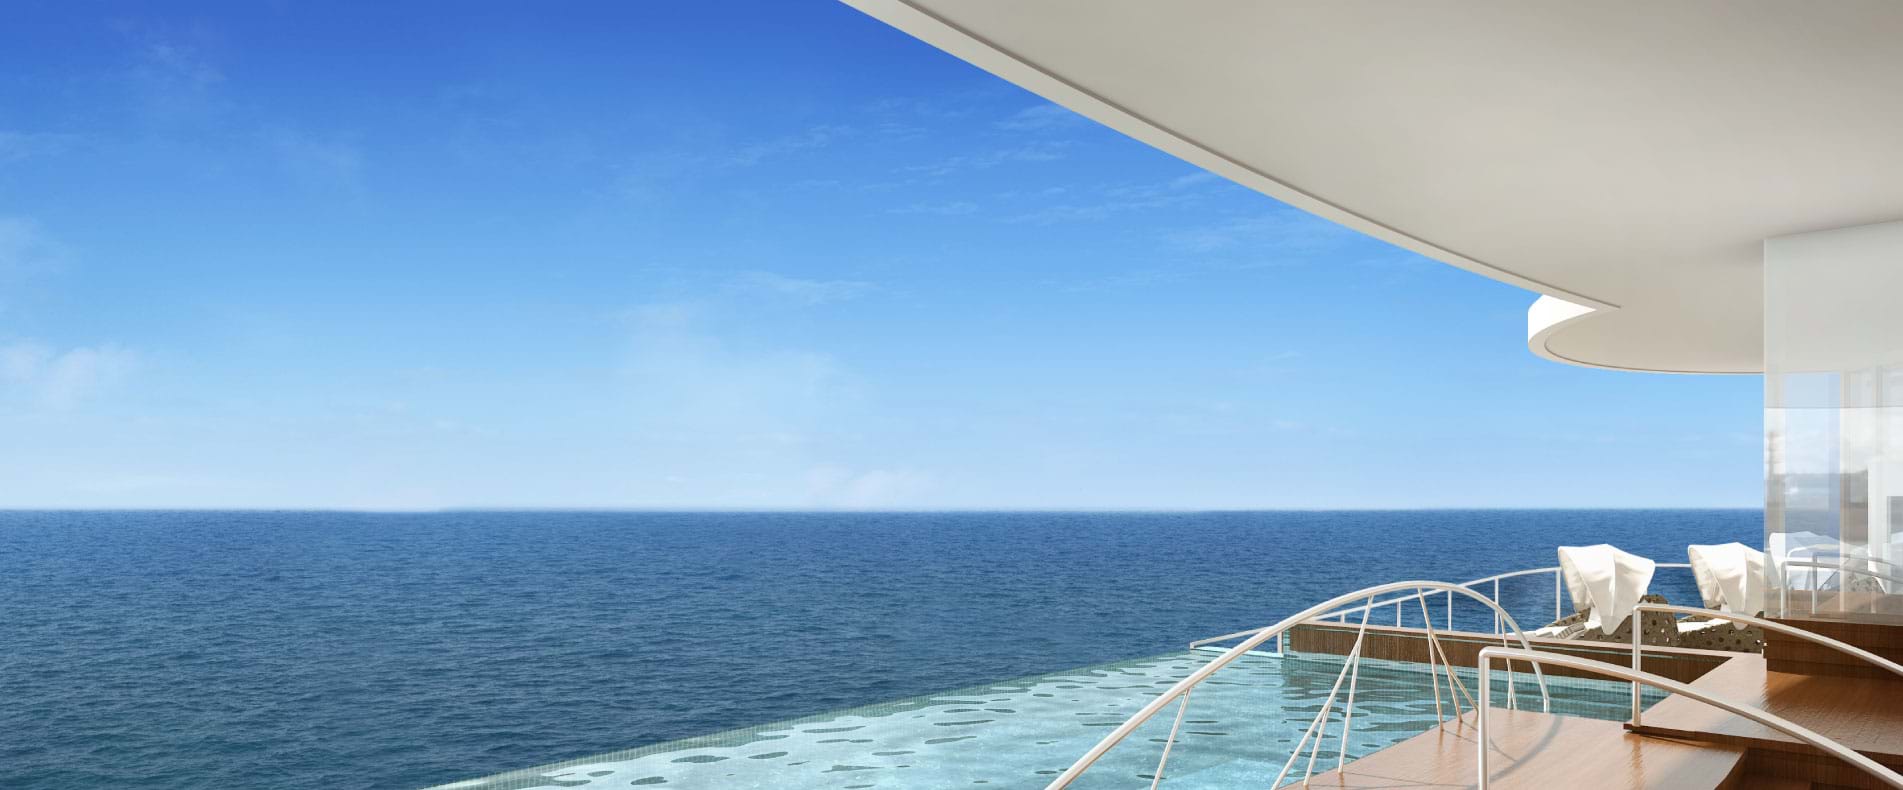 Regent Seven Seas Explorer, Infinity Pool, Luxury Cruise